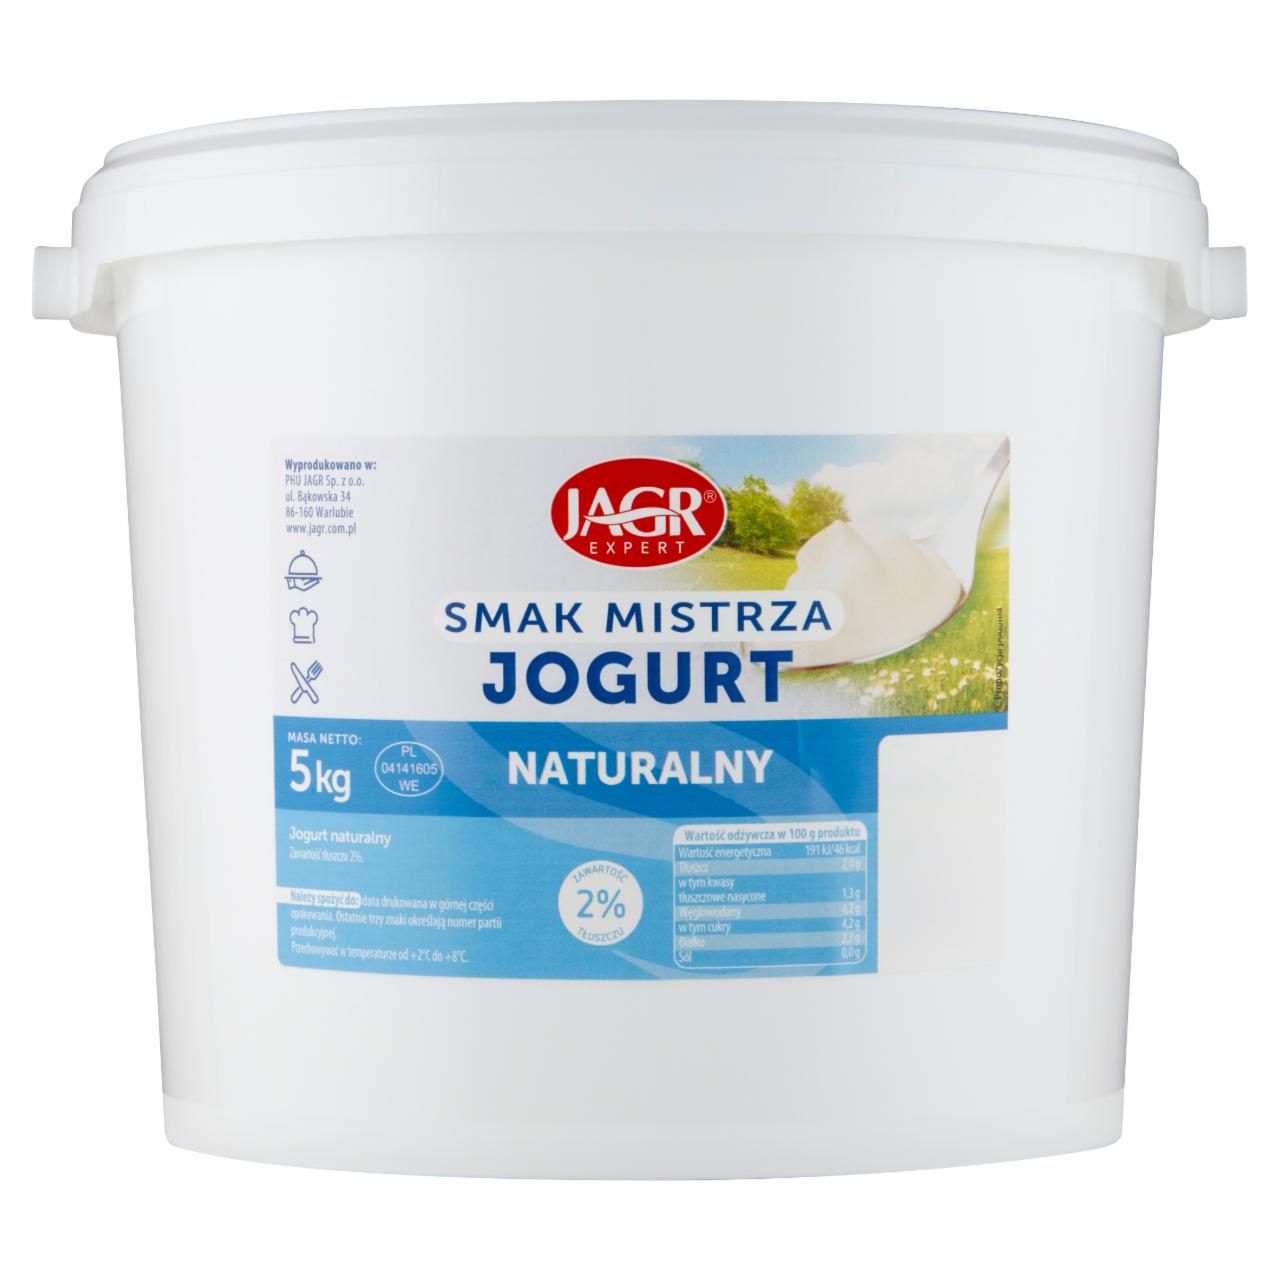 Zdjęcia - Jagr Expert Jogurt naturalny 5 kg